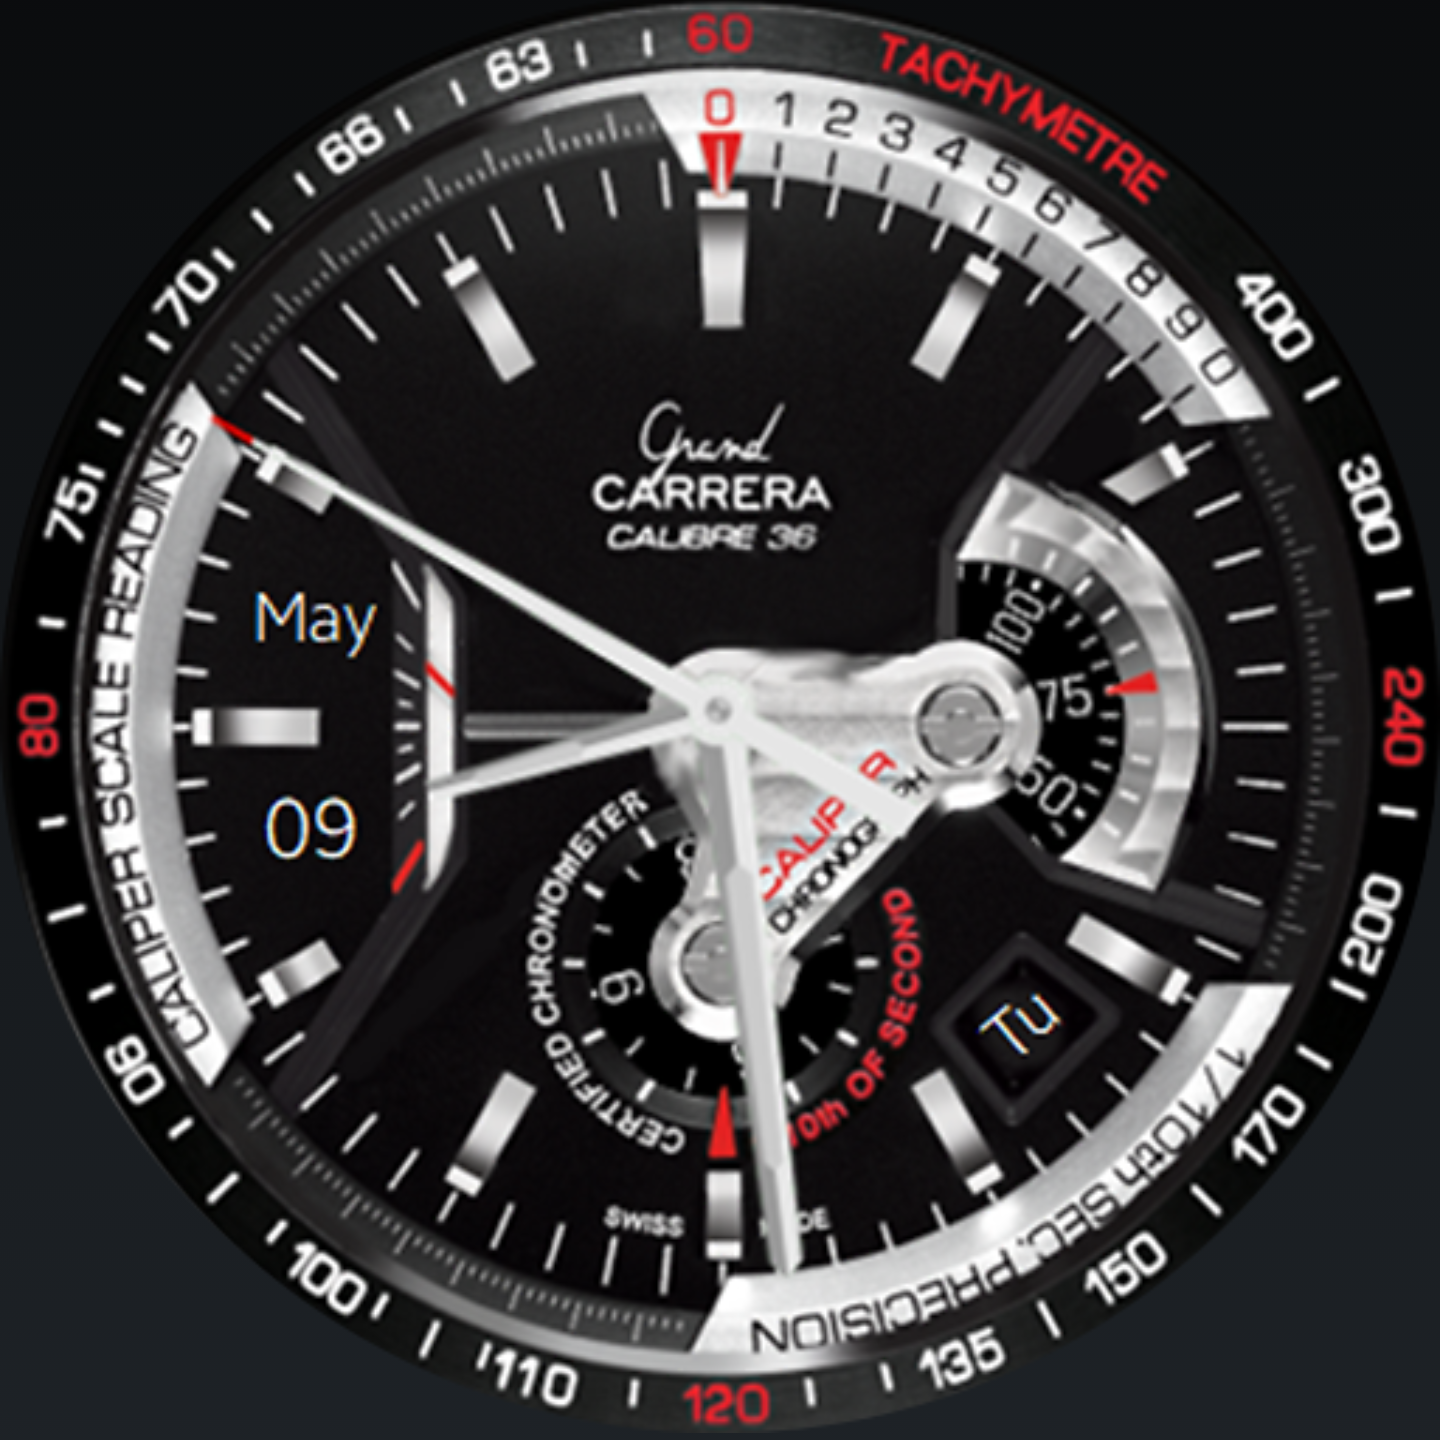 Циферблаты для Samsung Galaxy watch 4 Classic. Циферблаты для часов самсунг. Циферблаты для gt 3. Циферблат для смарт часов швейцарских часов. Бесплатный циферблат на часы x8 pro